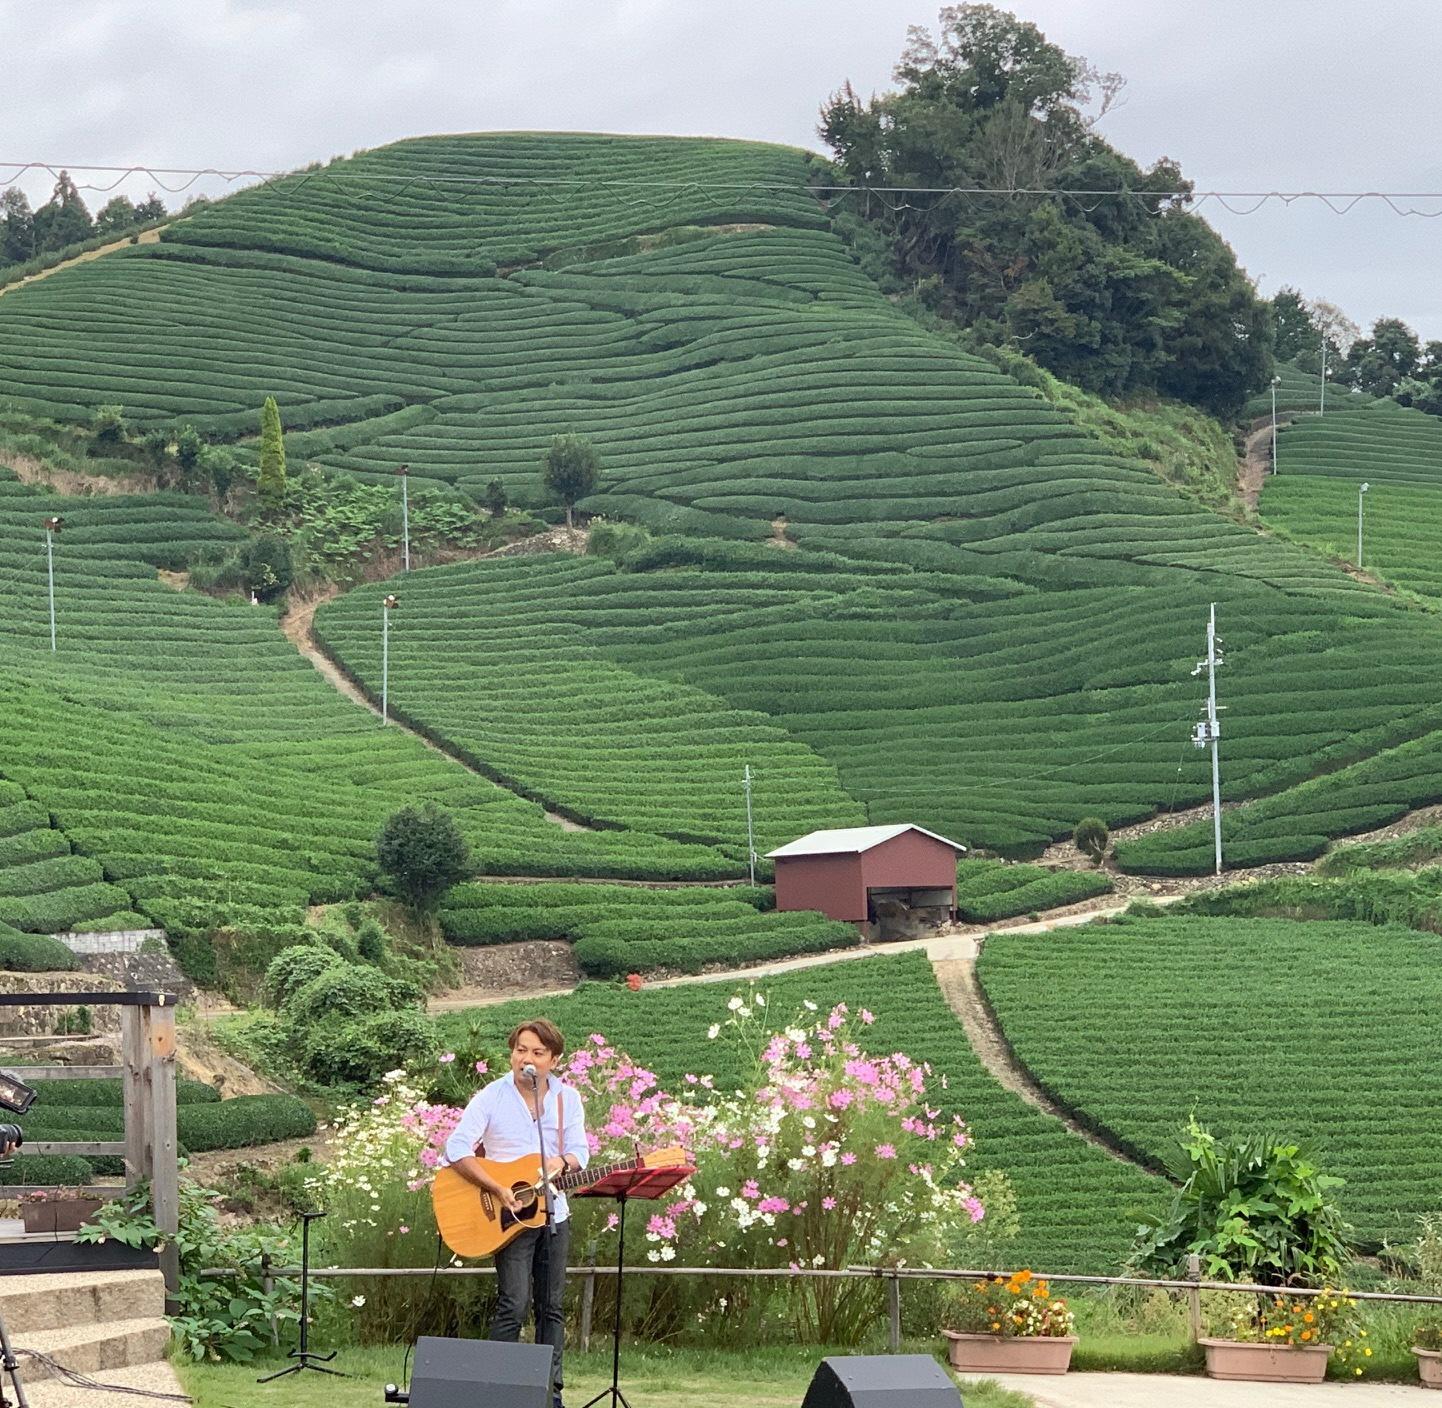 演奏している男性の背景に一面の茶畑が広がっている様子の写真